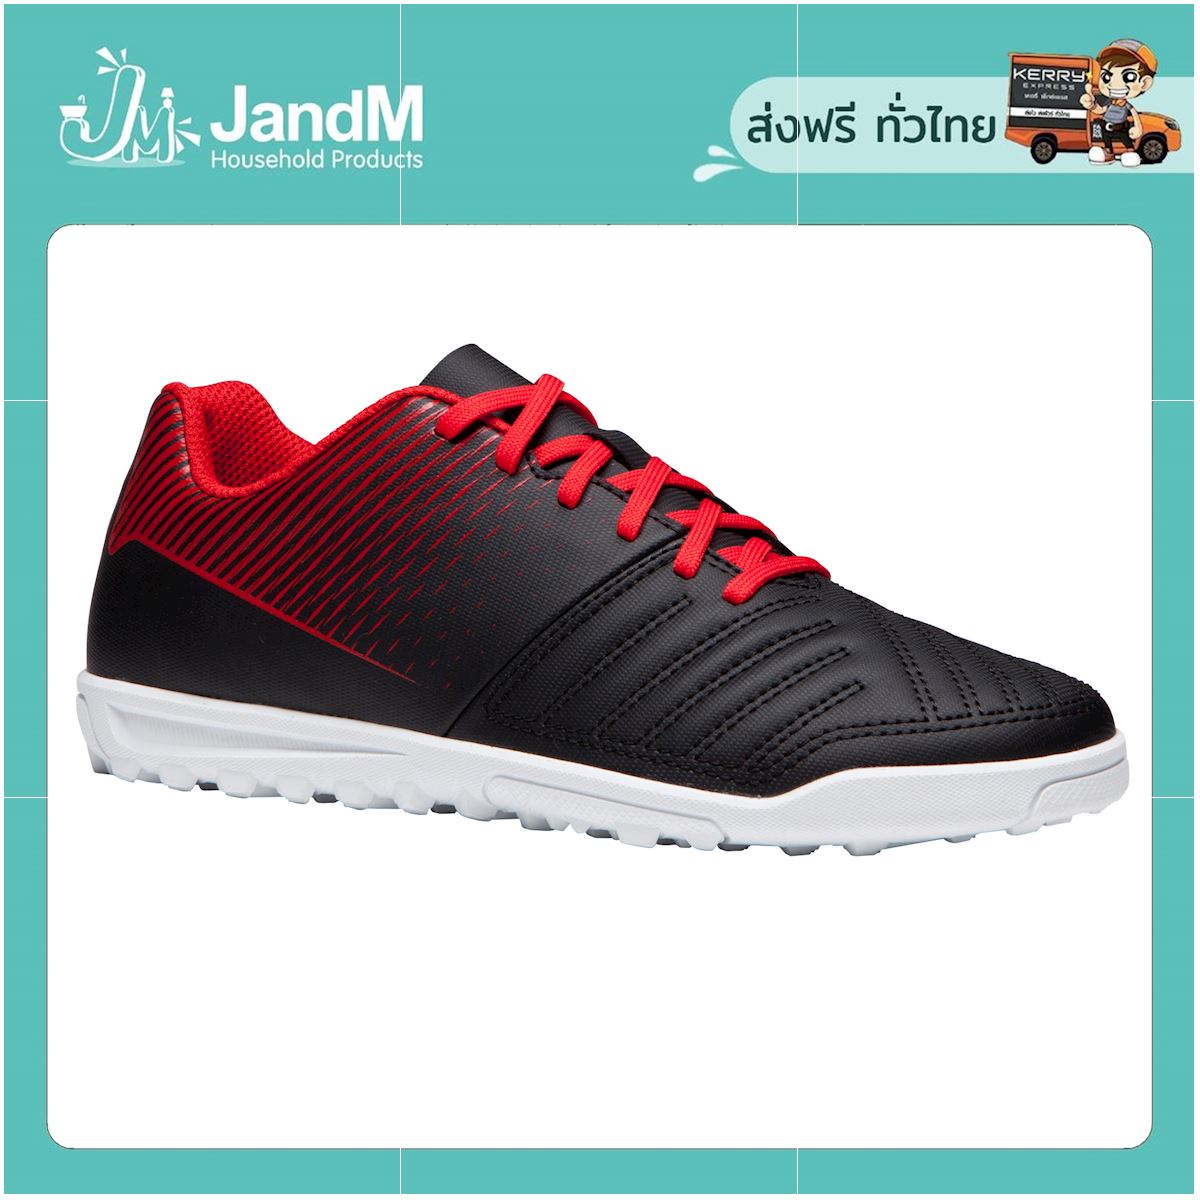 JandM รองเท้าฟุตบอลเด็กสำหรับสนามพื้นแข็งรุ่น Agility 100 HG (สีดำ/ขาว/แดง) ส่งkerry มีเก็บเงินปลายทาง